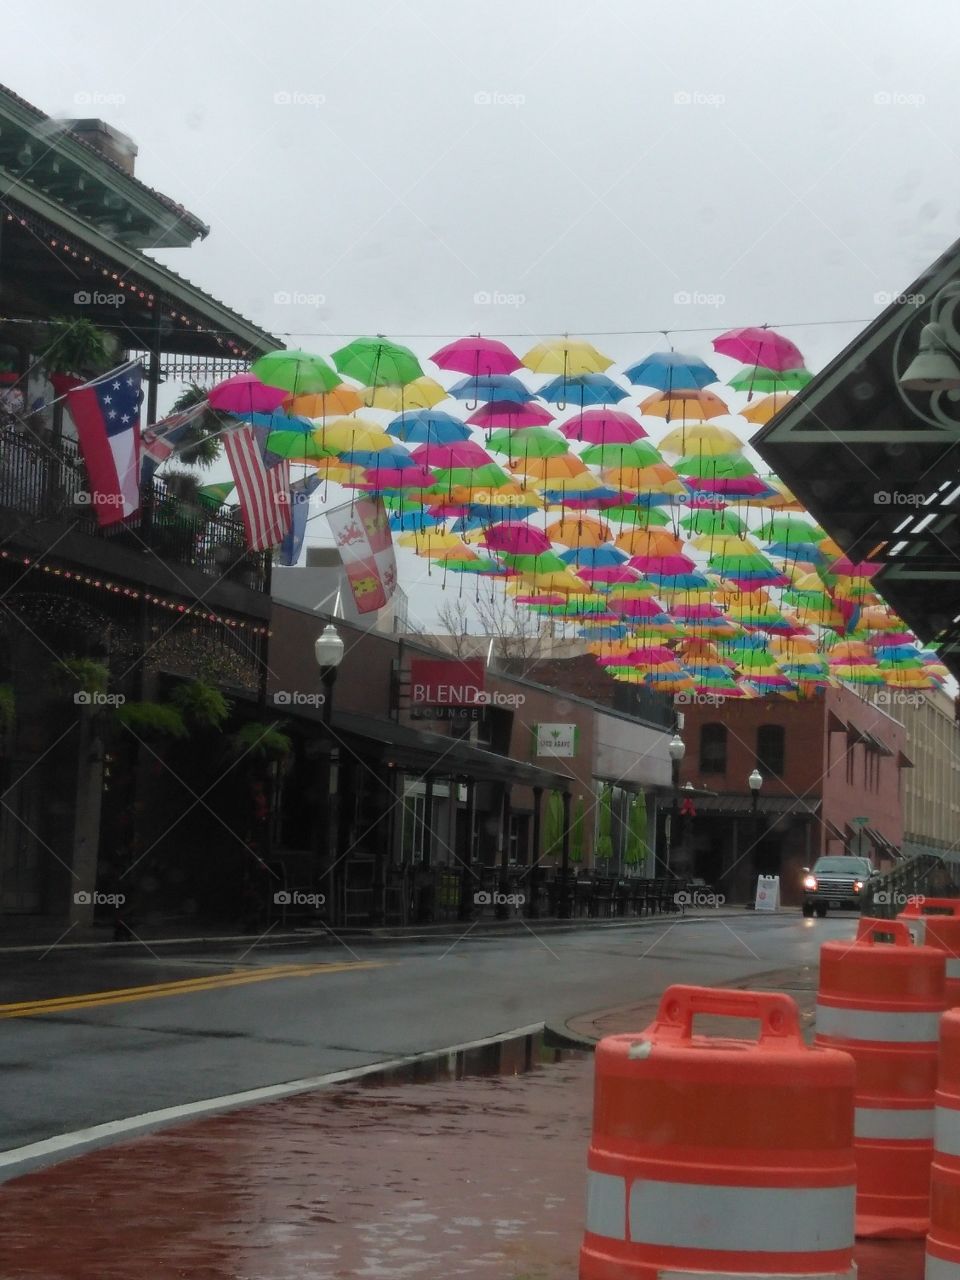 what the umbrellas